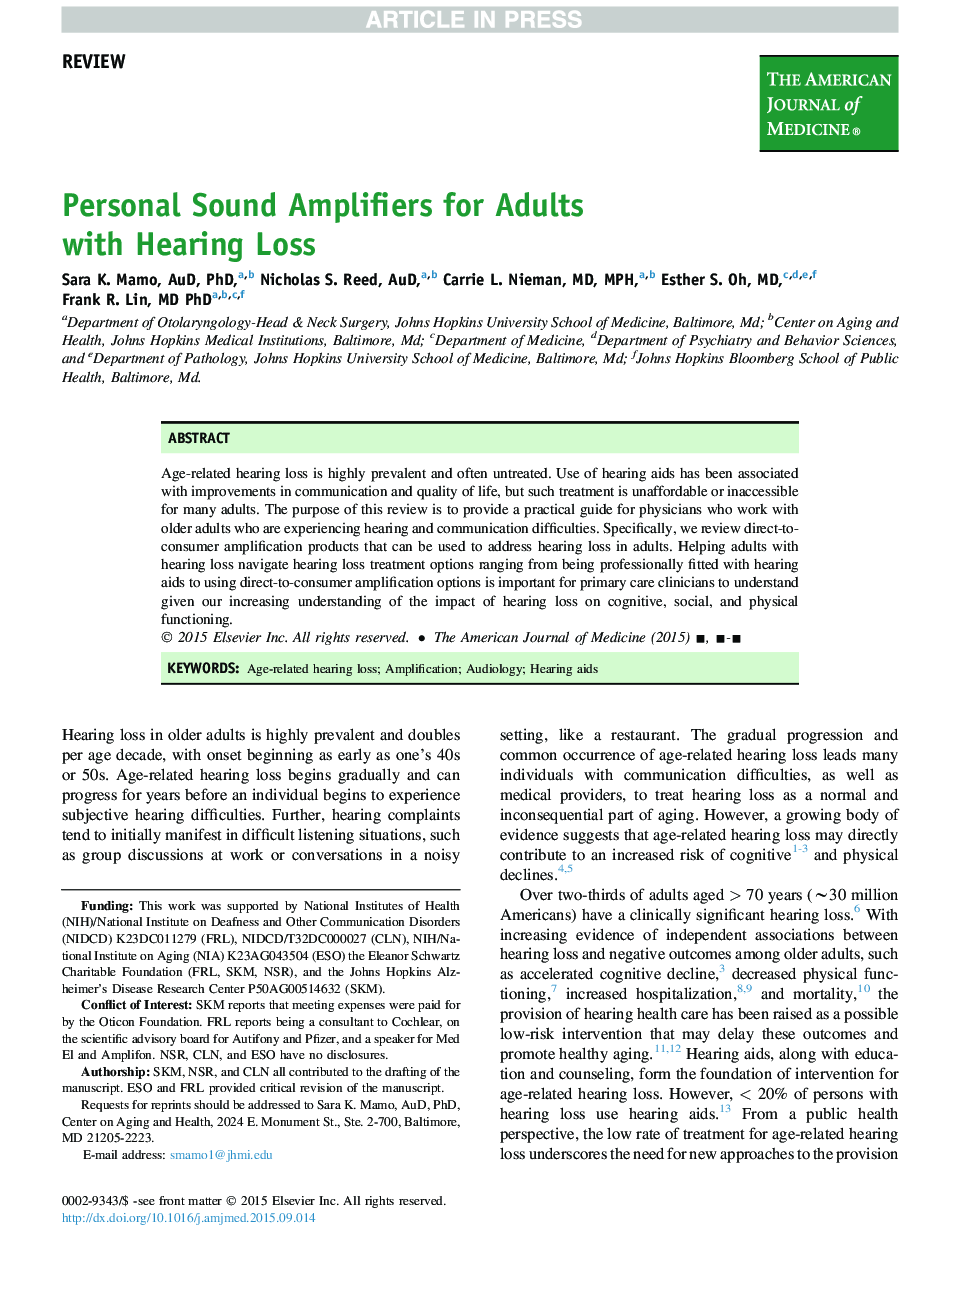 تقویت کننده های صوتی شخصی برای بزرگسالان با از دست دادن شنوایی 